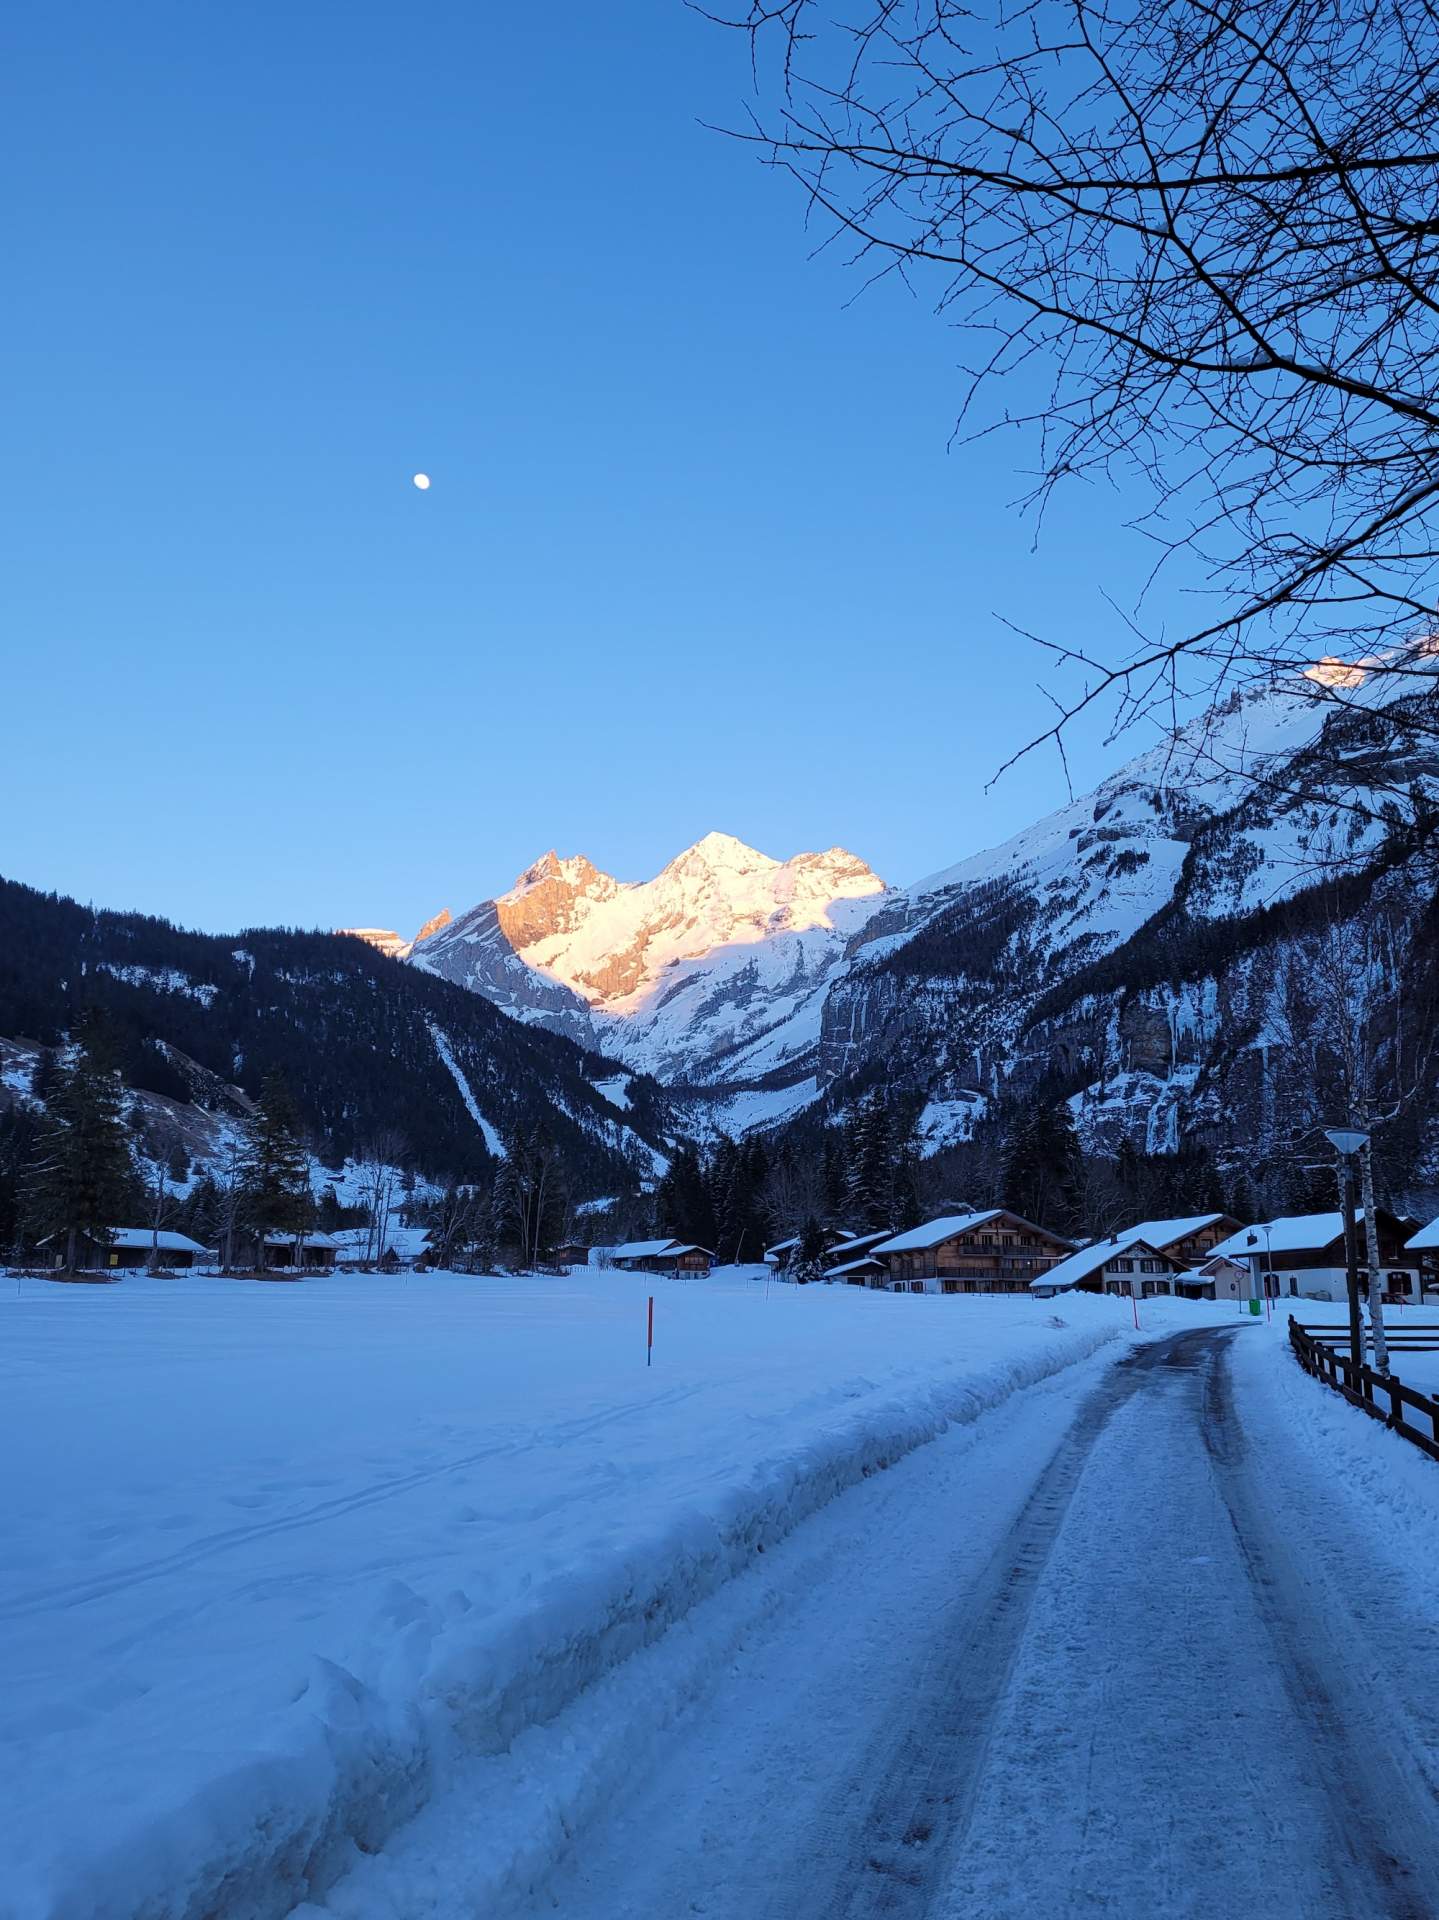 Abb. 3: Klare und kalte Nächte in den Alpentälern, Kandersteg, März 2022, Quelle: H. Tobler